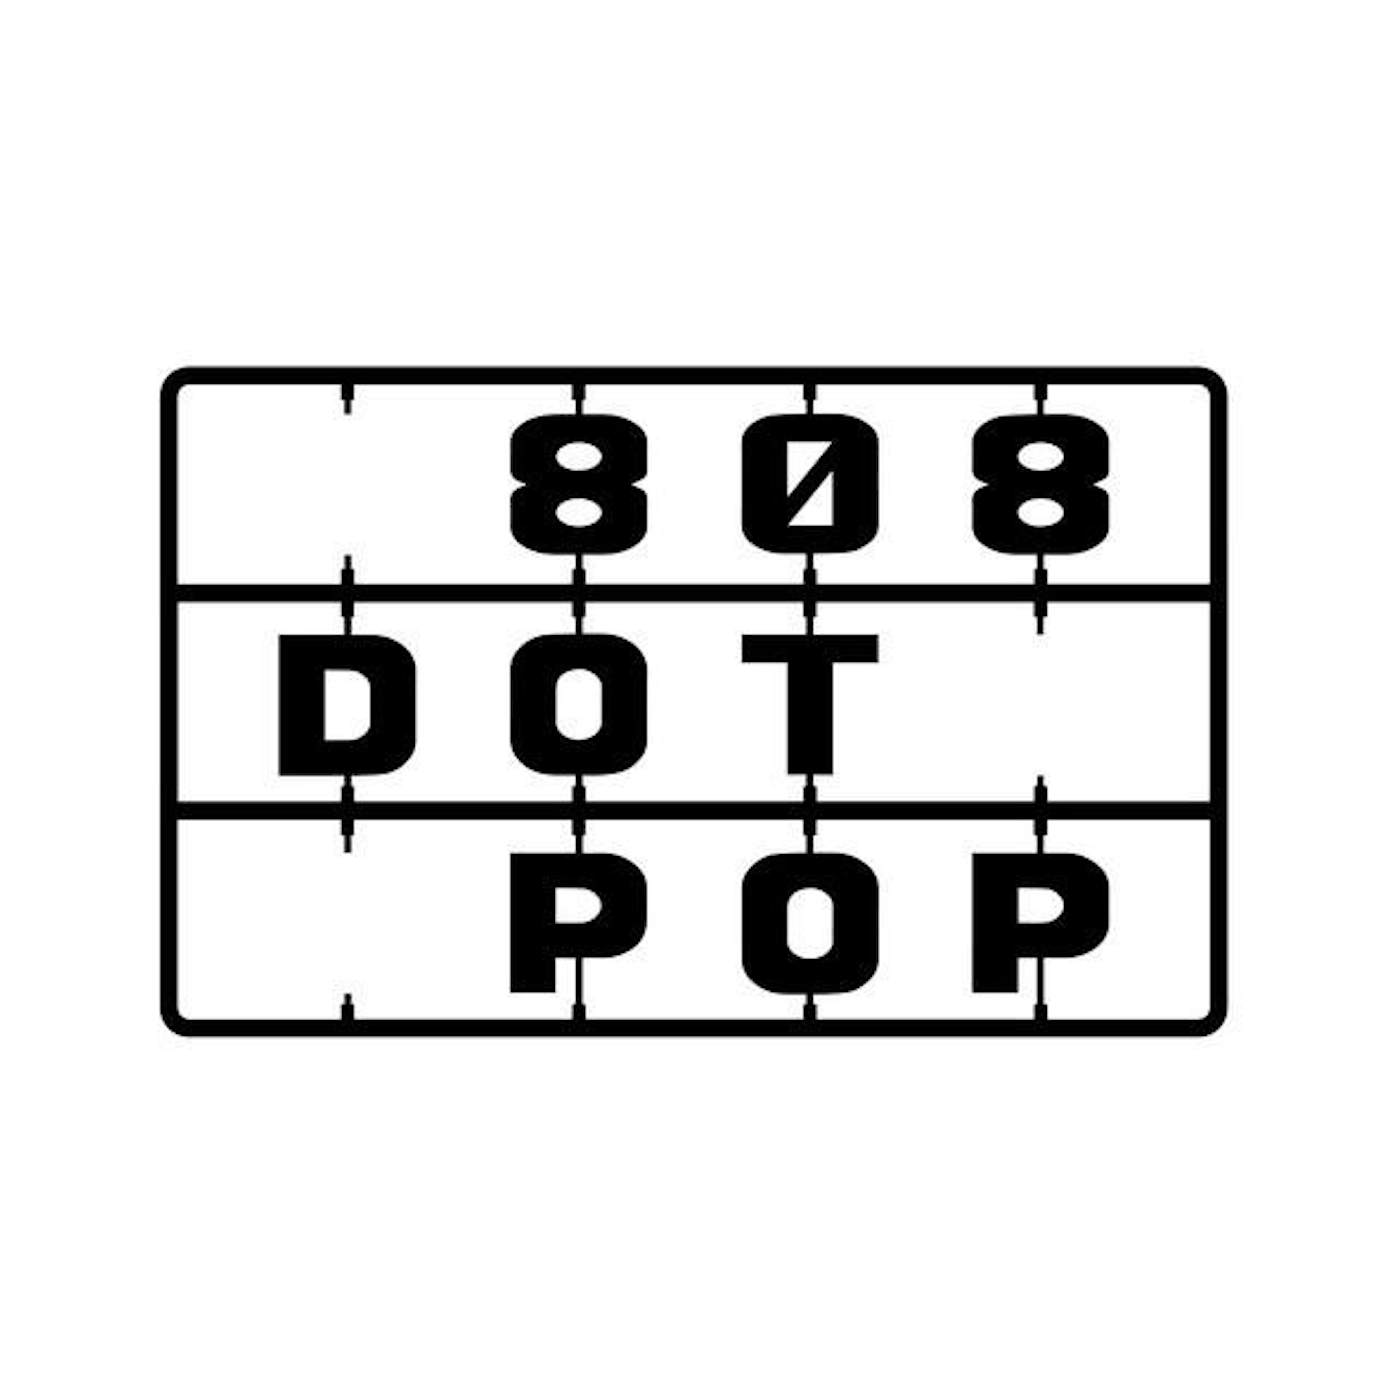 808 Dot Pop